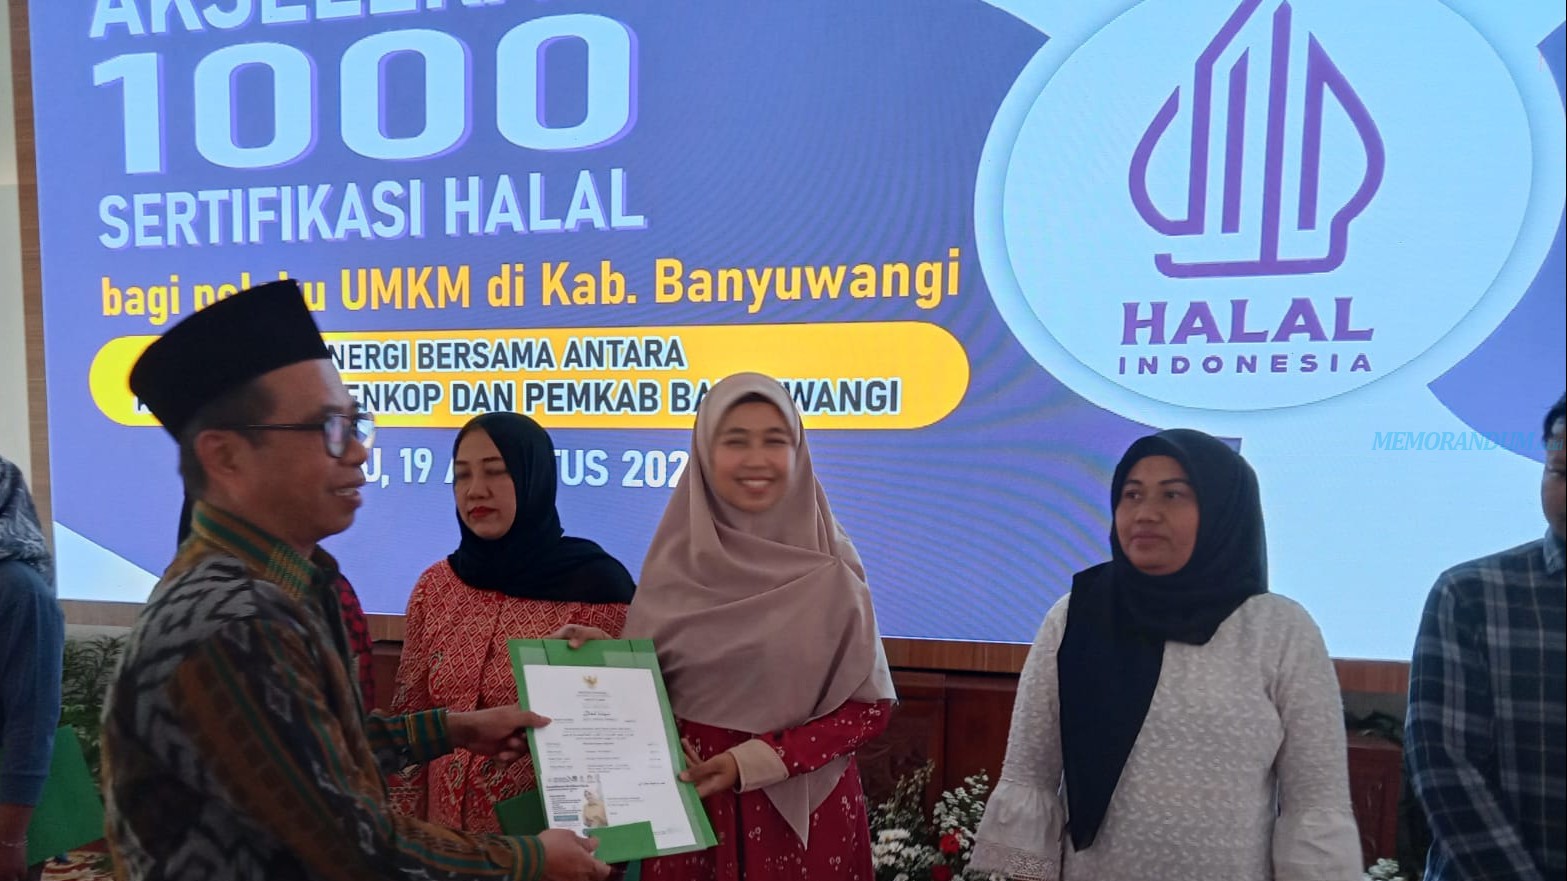 BPJH Kemenag Apresiasi Banyuwangi, Terdapat 5.150 UMK yang Sudah Bersertifikat Halal